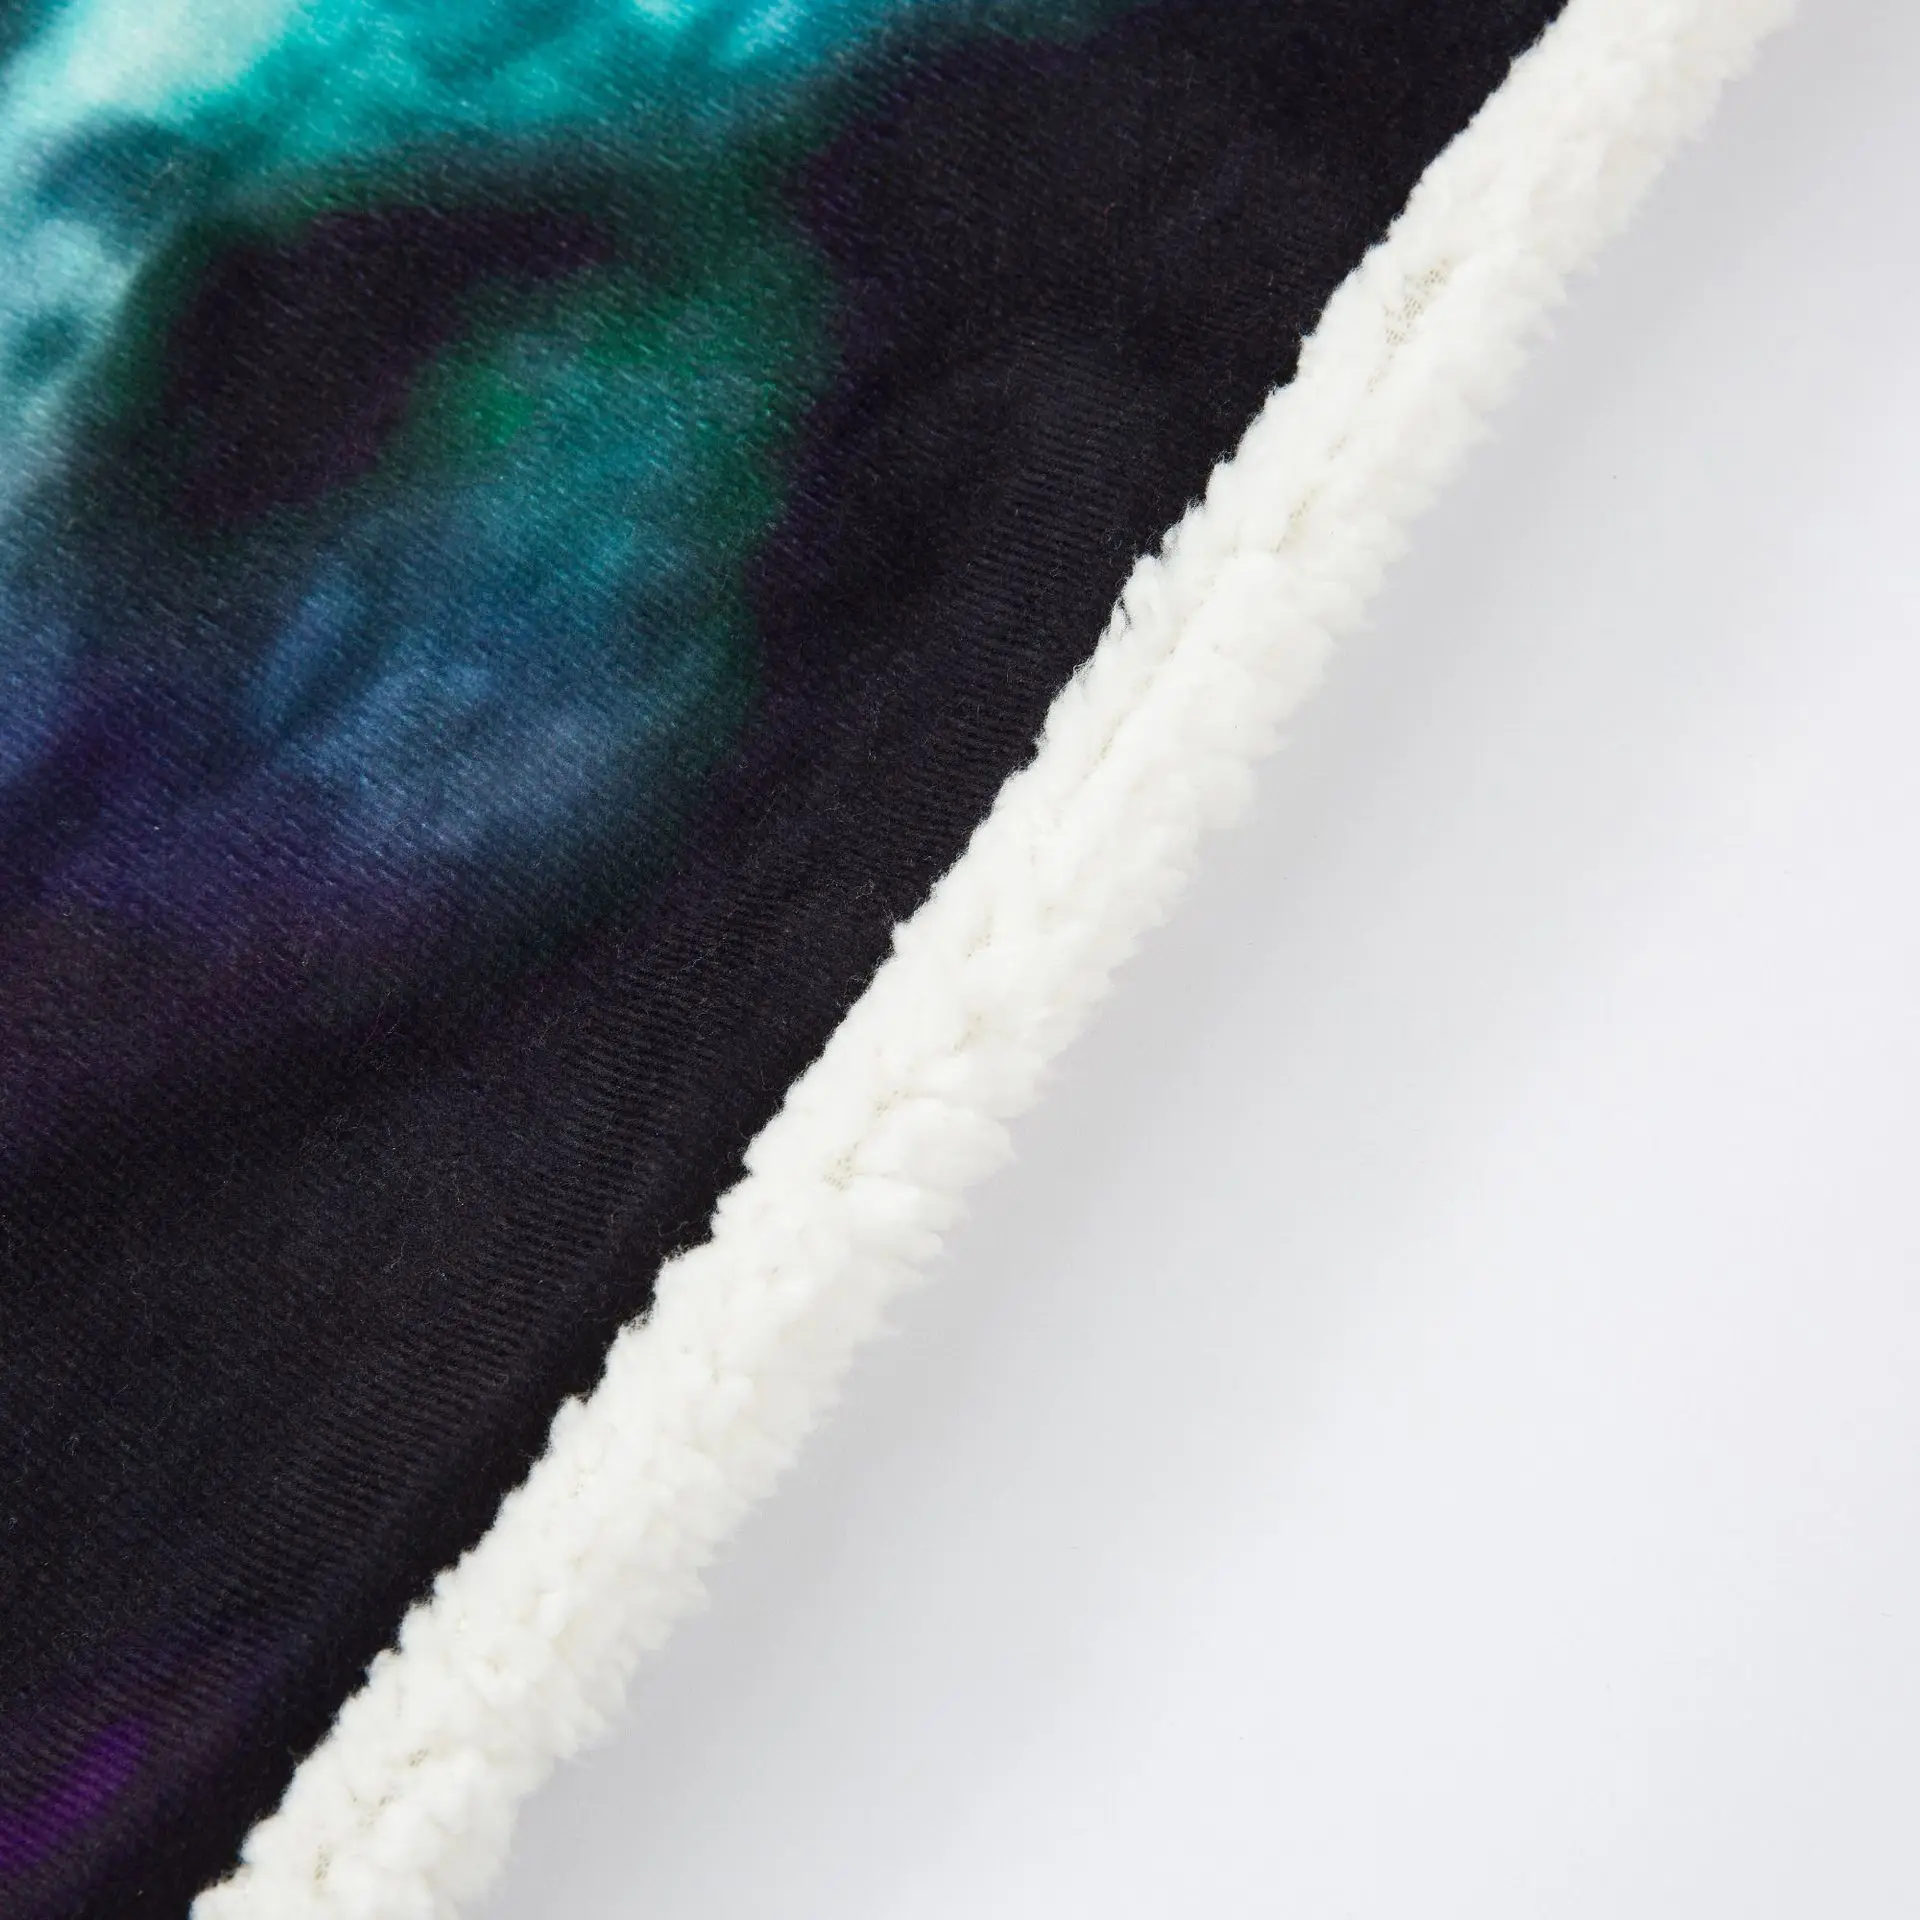 Одеяло с рукавами плед 3D плюшевый, с принтом коралловый Шерпа флис мягкий диван одеяло для дома микрофибра теплое одеяло для улицы Манта